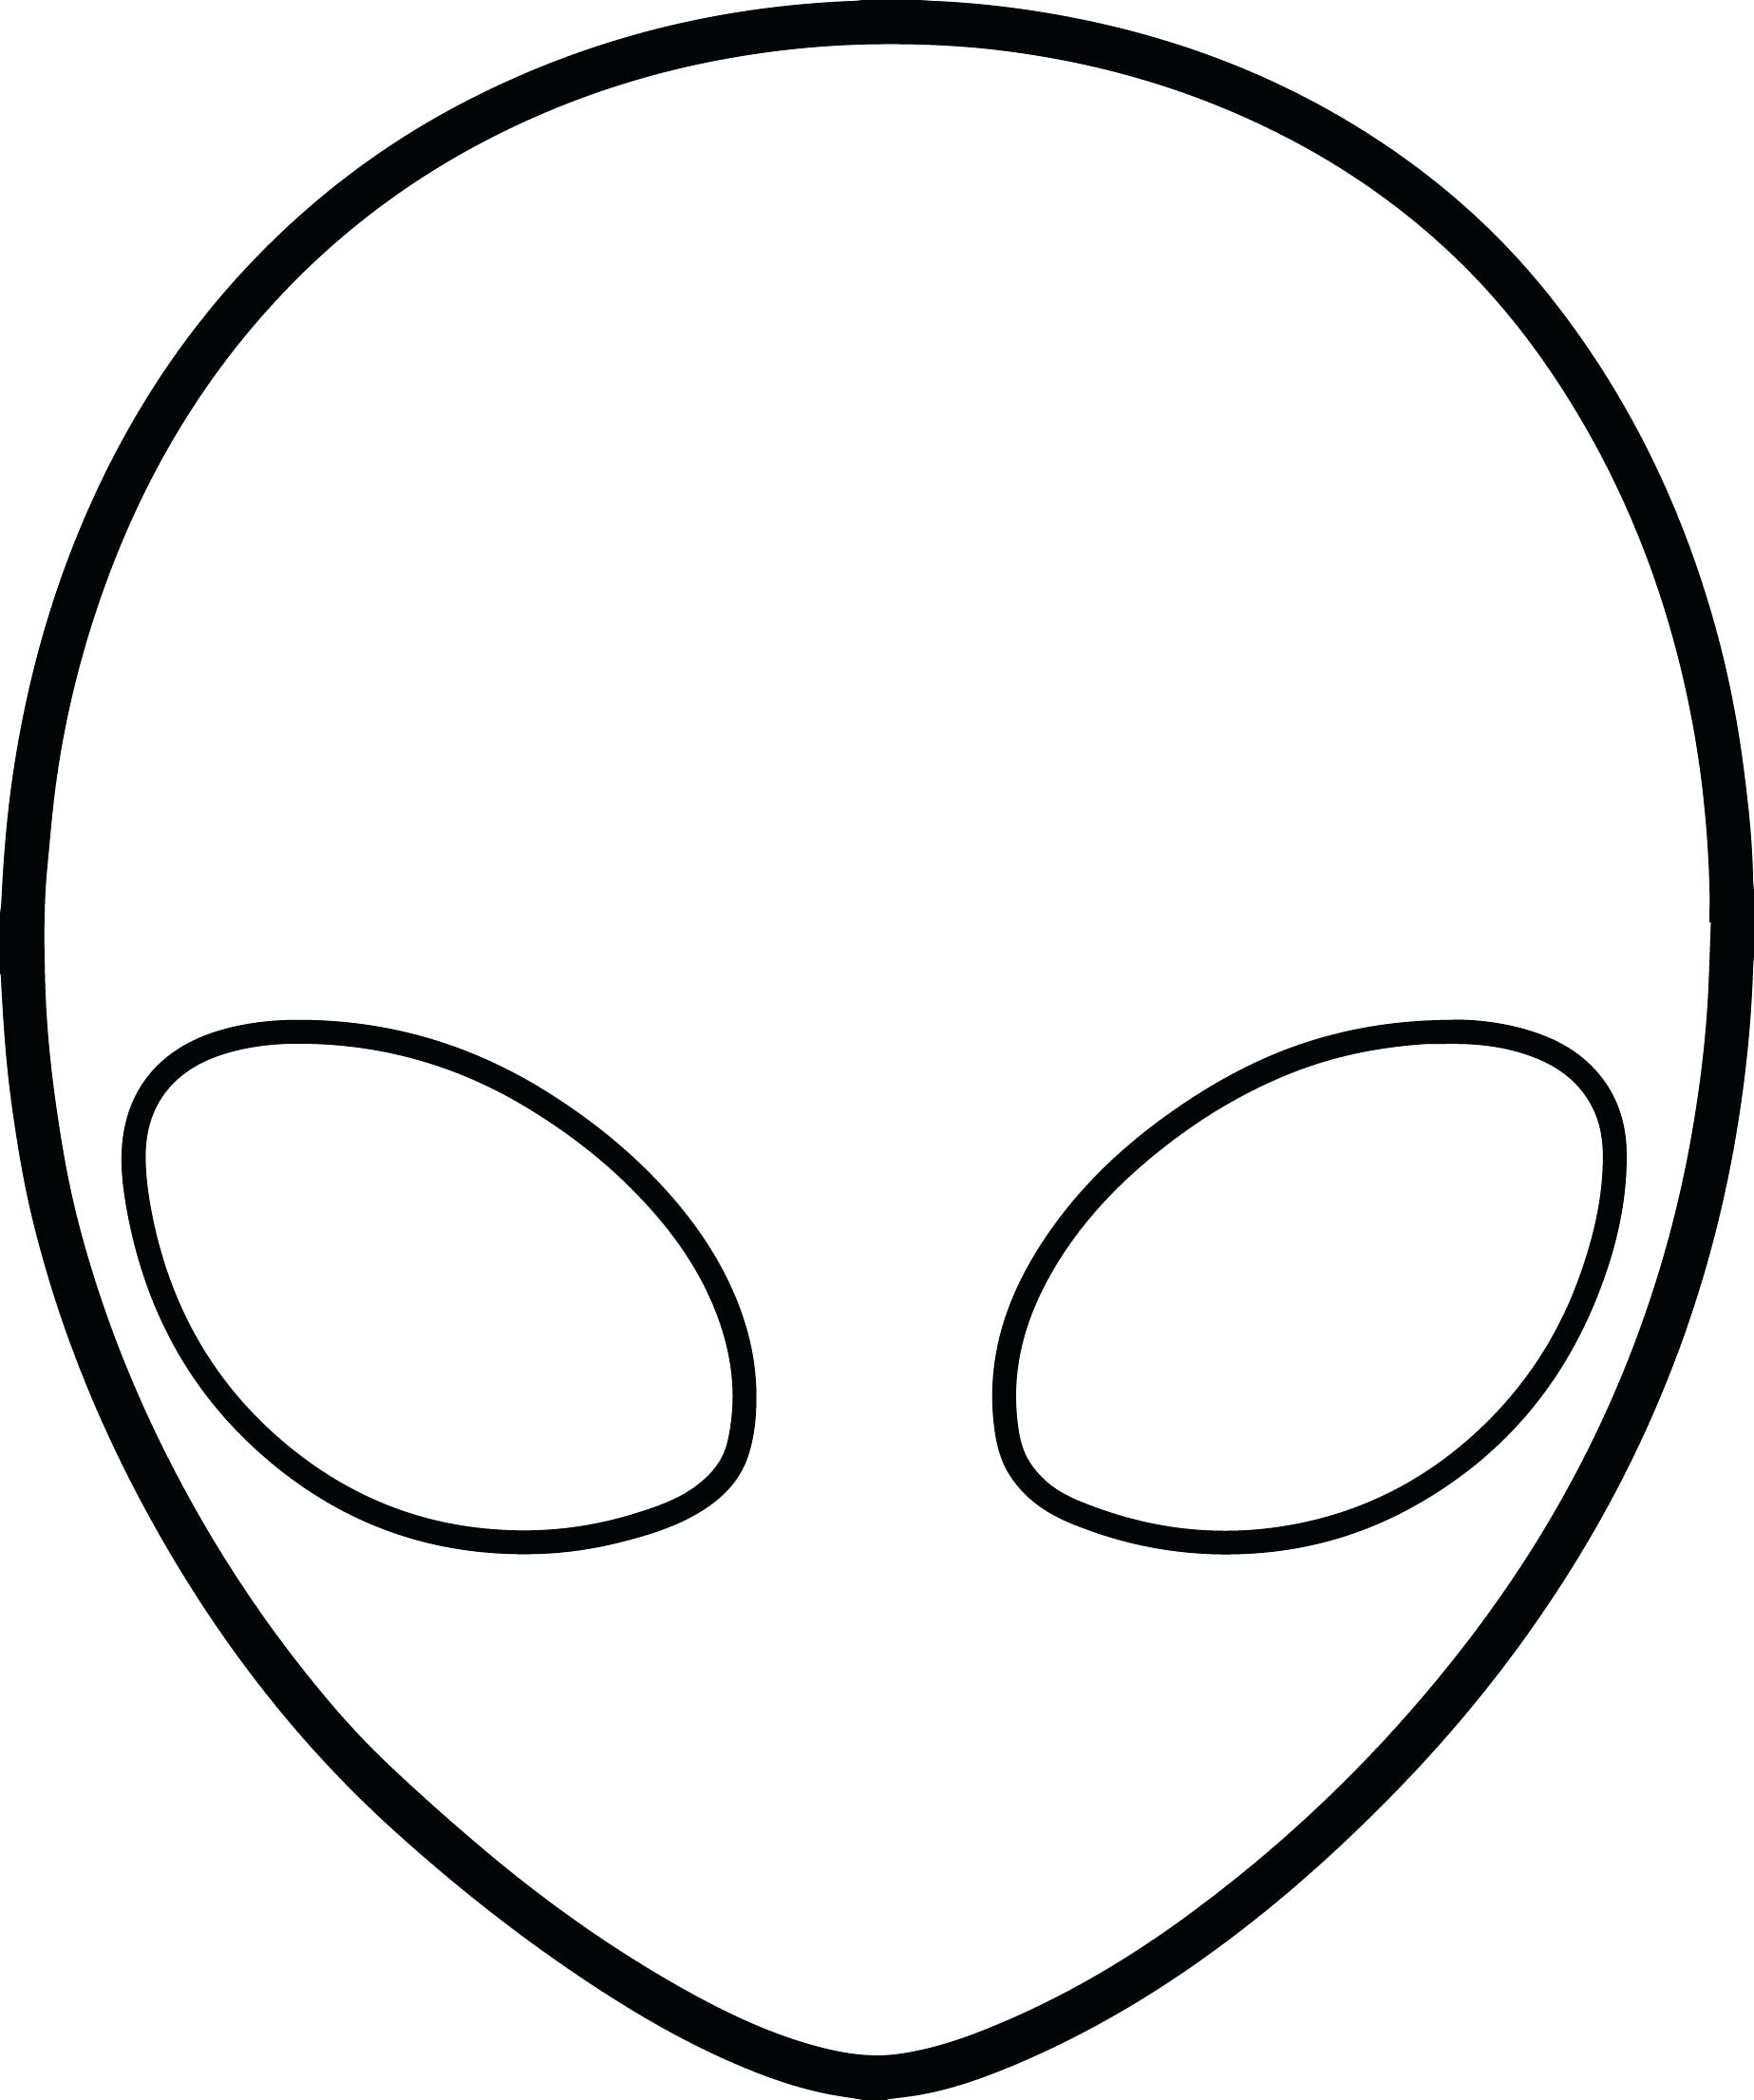 Распечатать картинку маску. Инопланетянин раскраска. Маска инопланетянина раскраска. Голова инопланетянина раскраска.